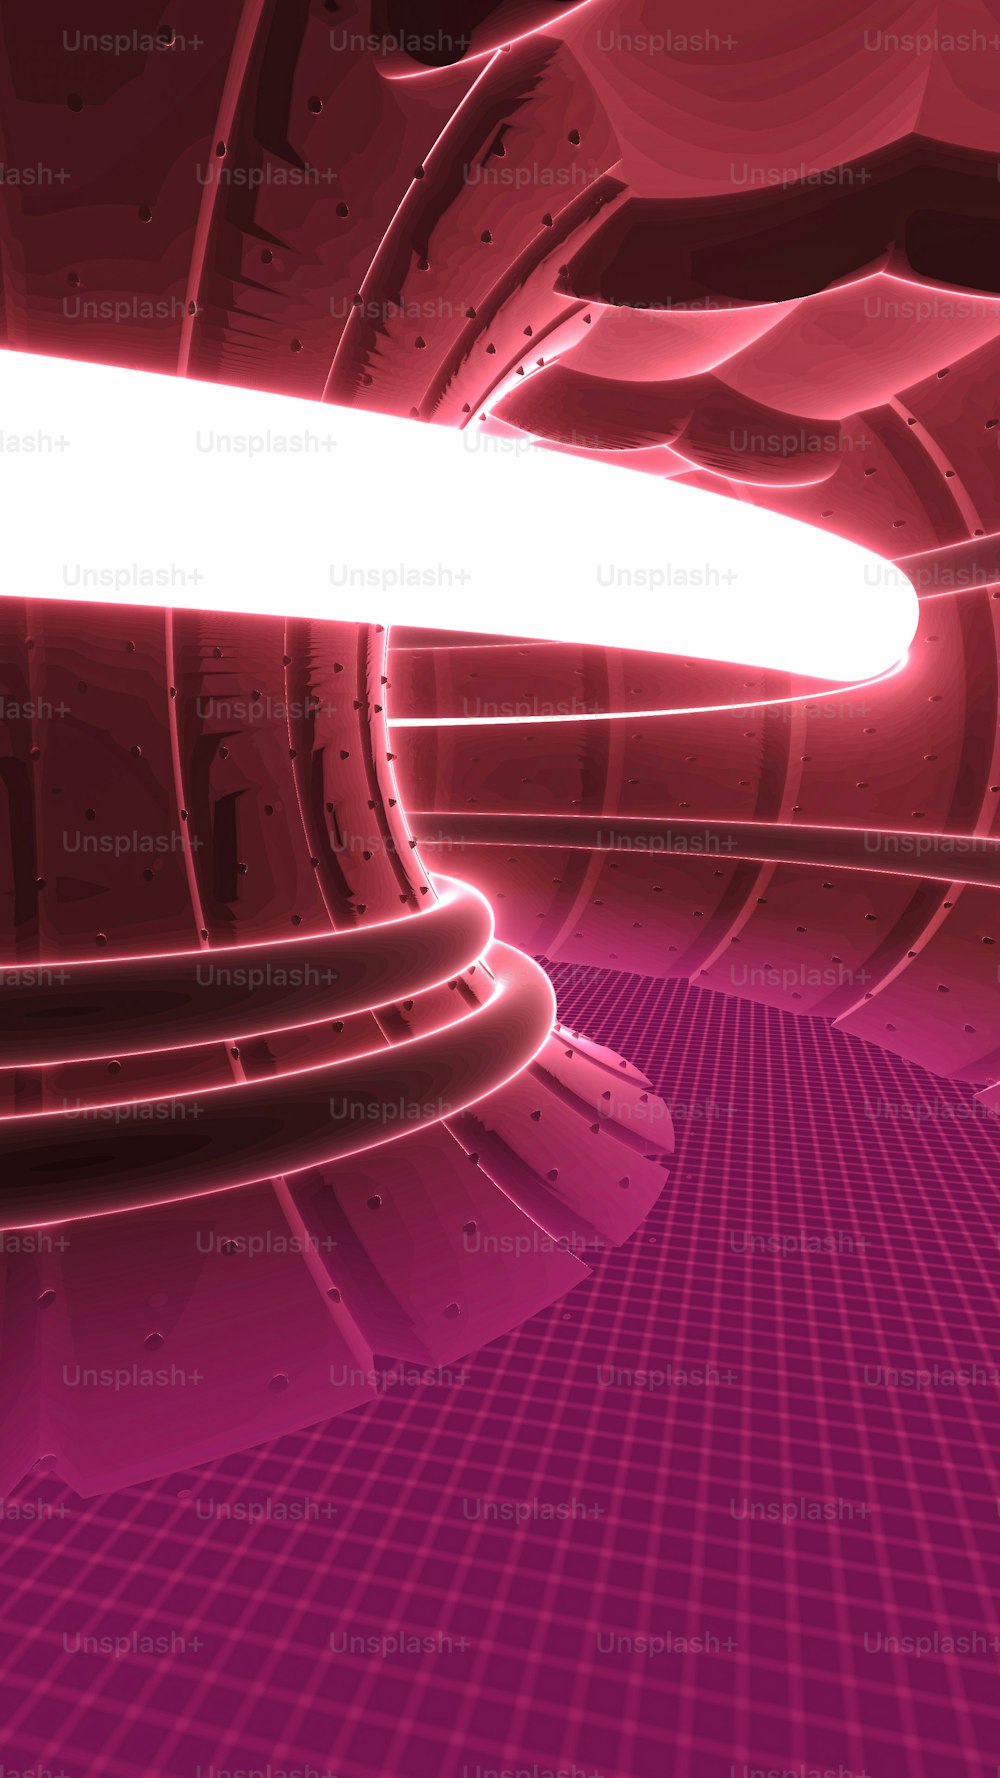 Ein abstraktes Bild eines rosa-violetten Tunnels